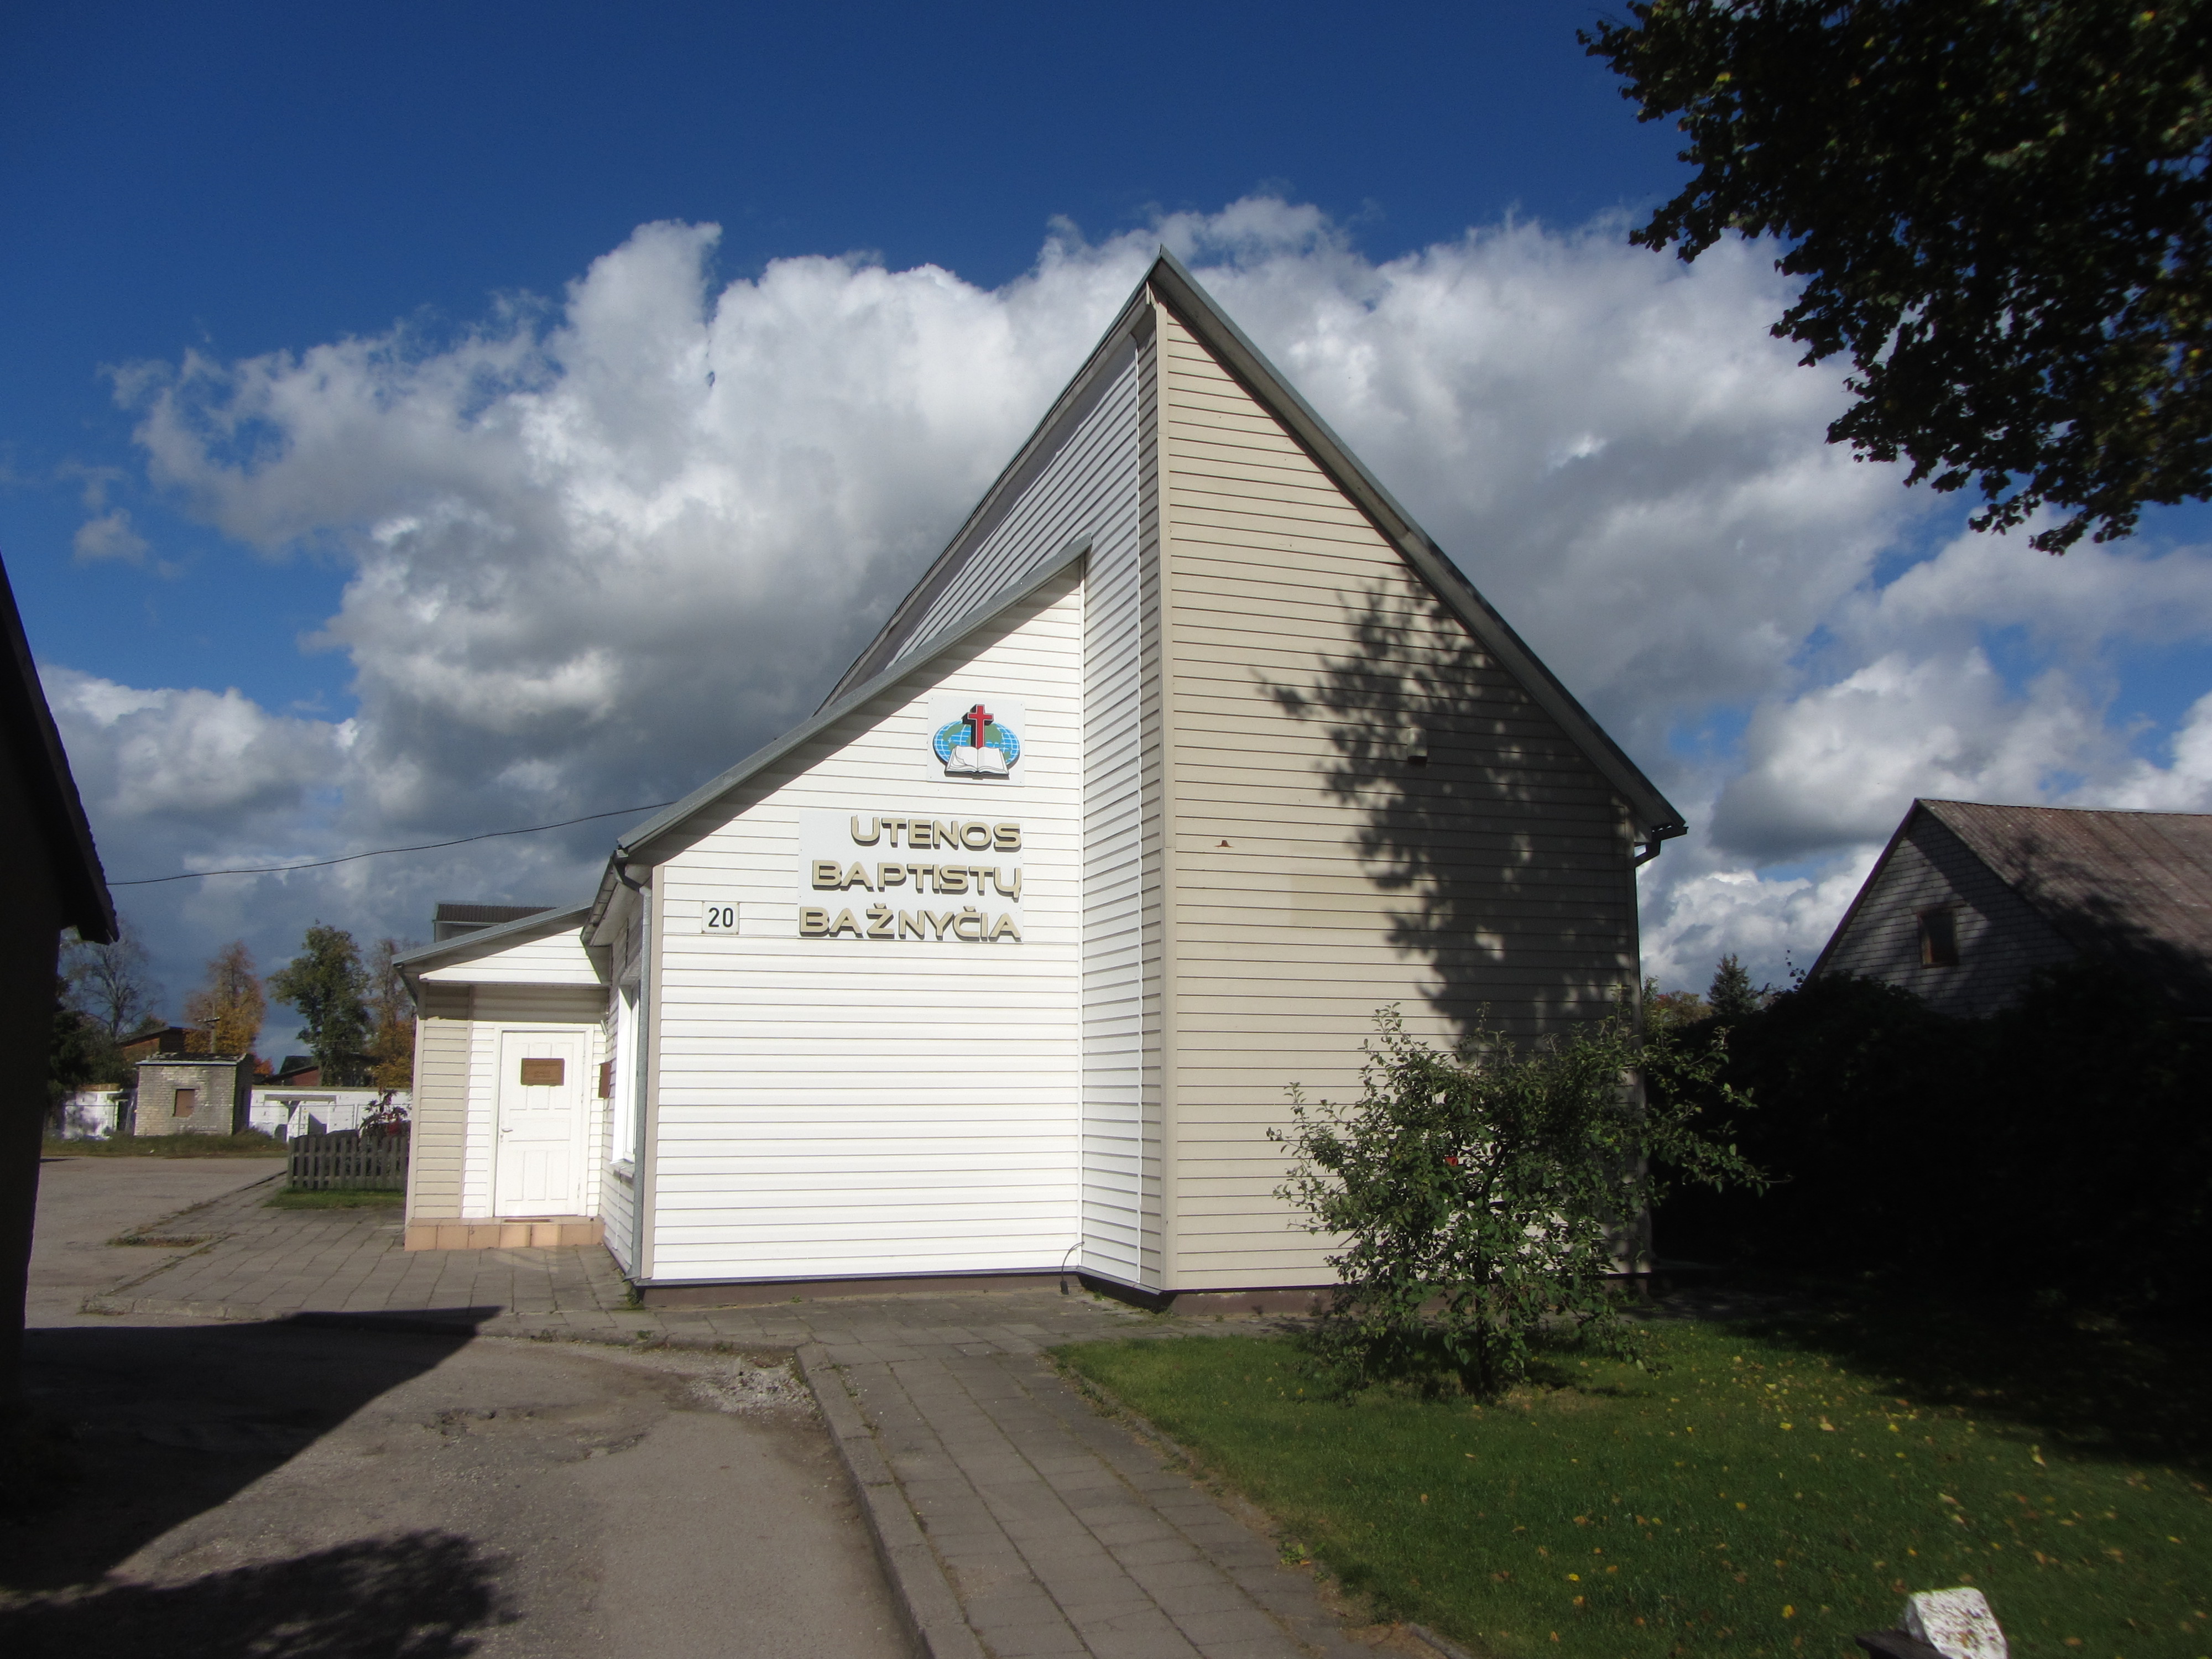 Utenos baptistų bažnyčia | vietoves.lt | 2016